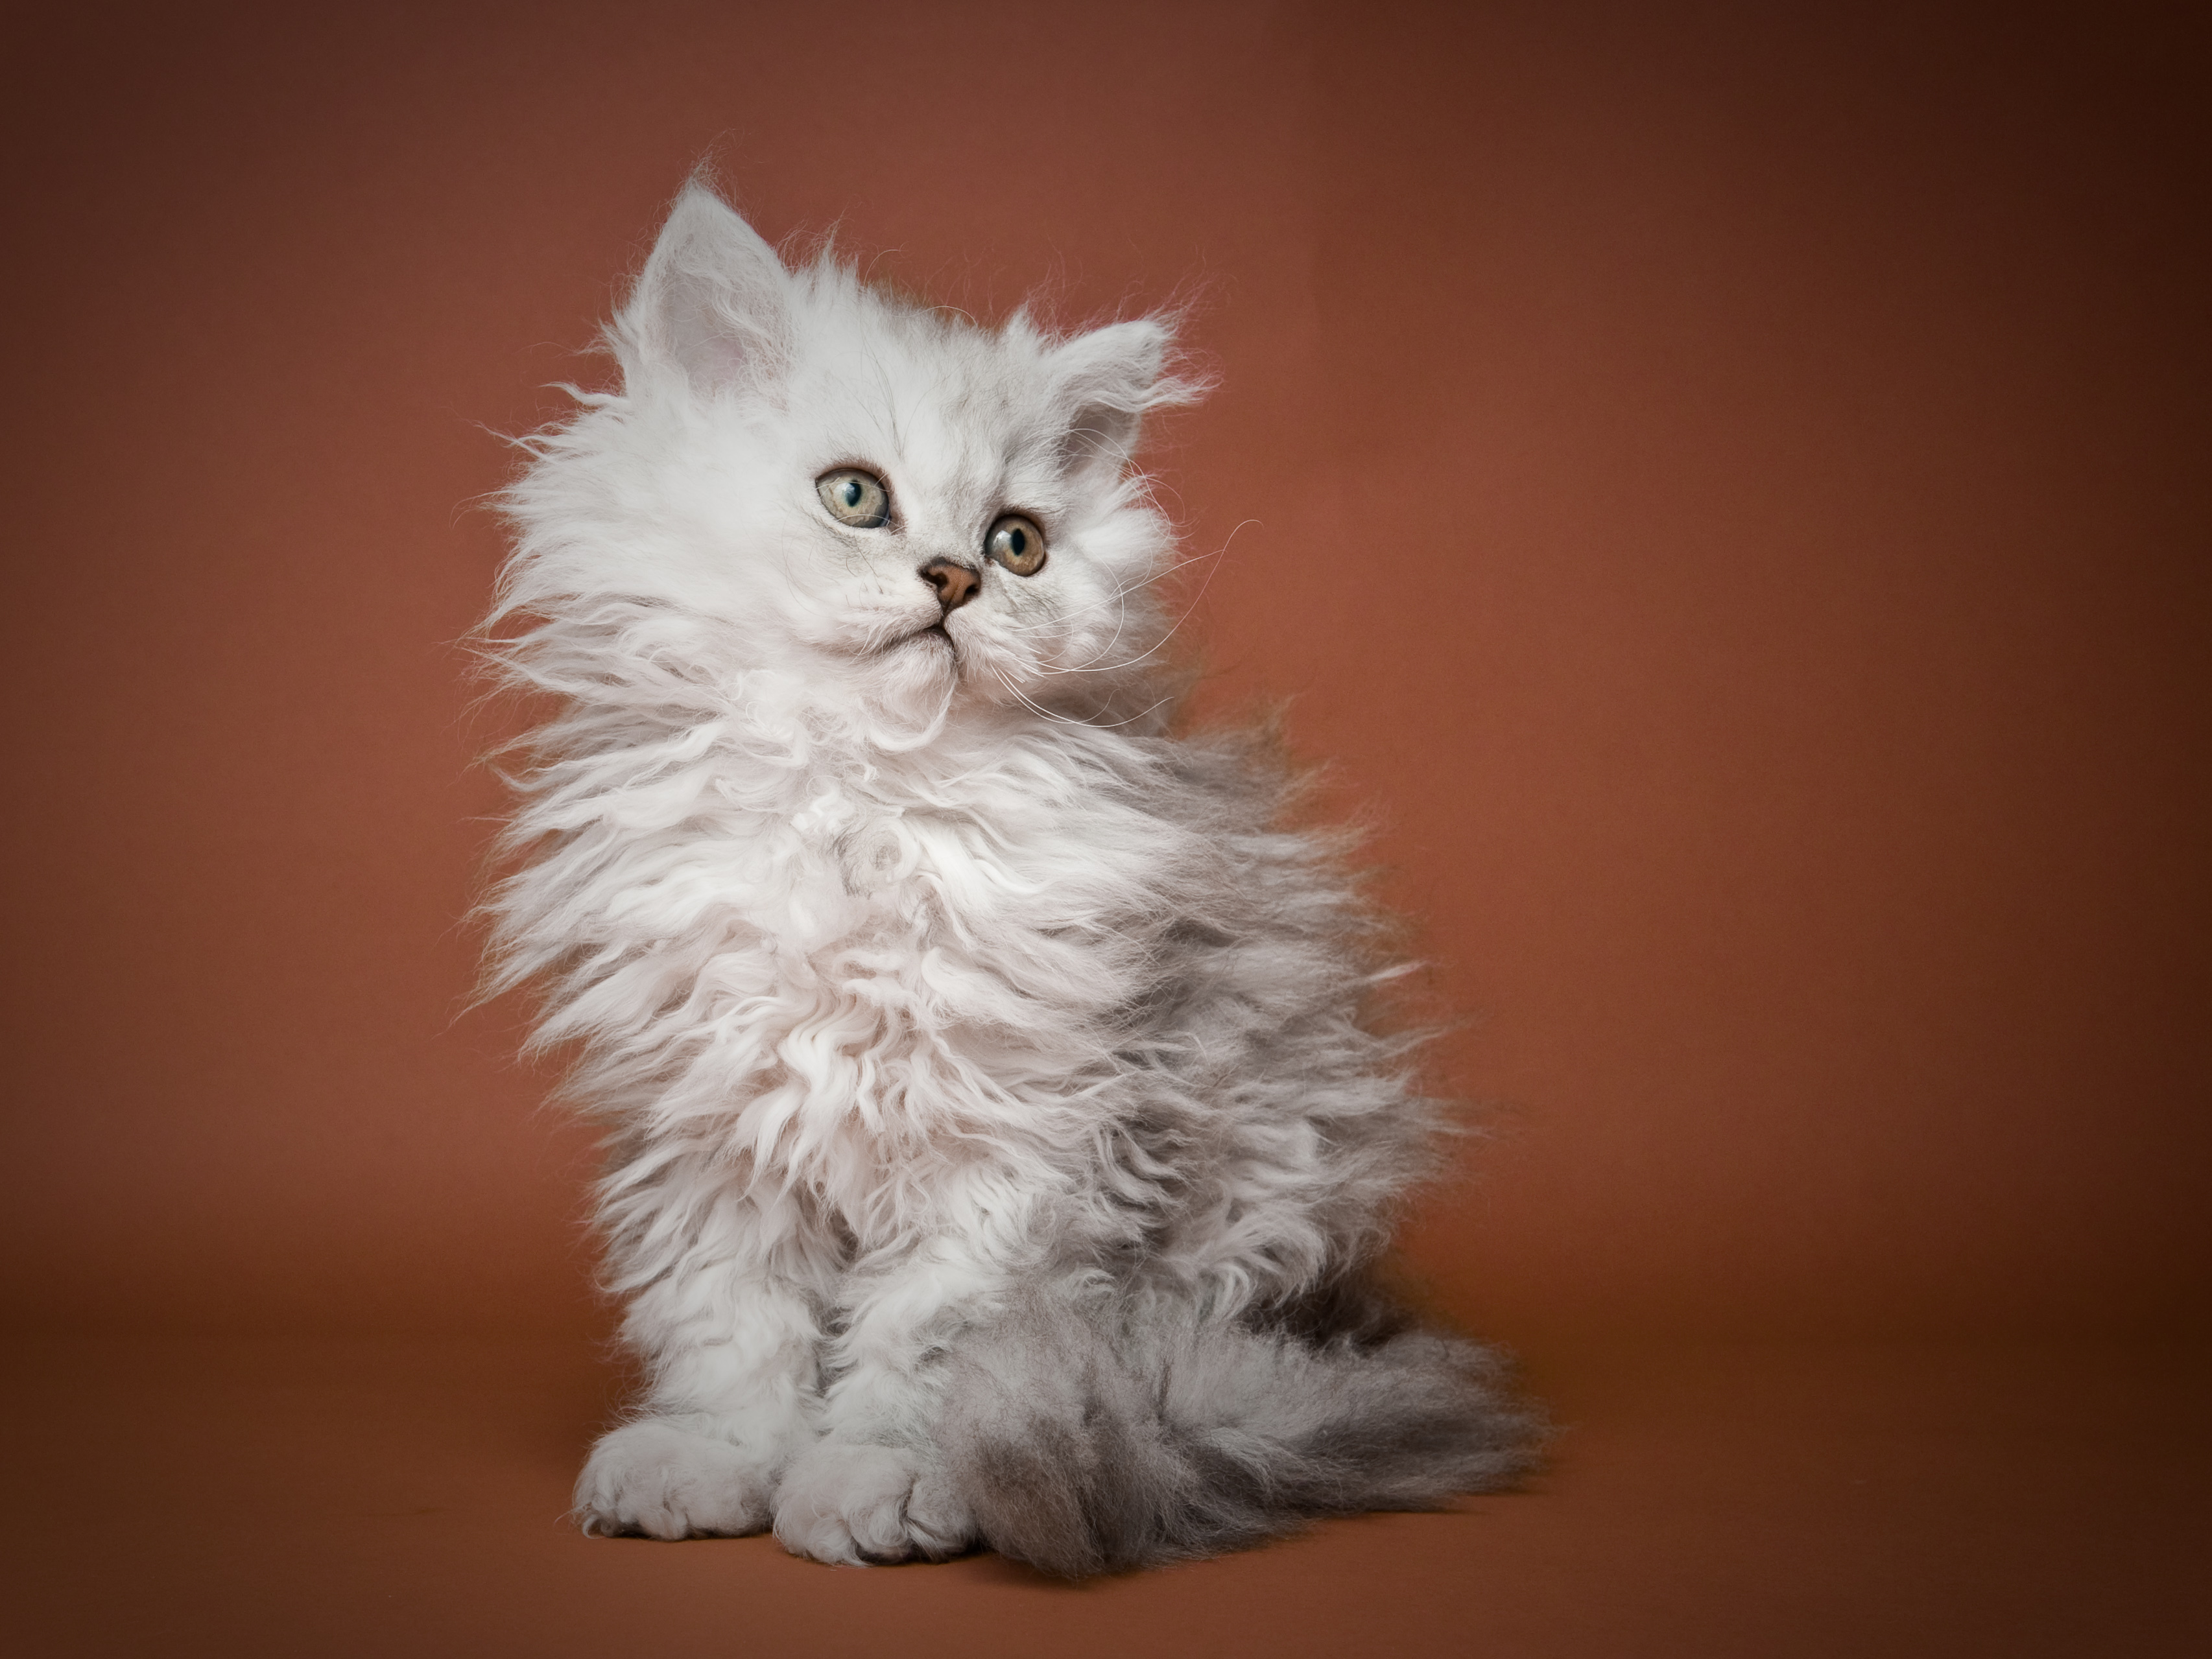 Кошка, которая похожа на белку благодаря роскошному хвосту, завораживает